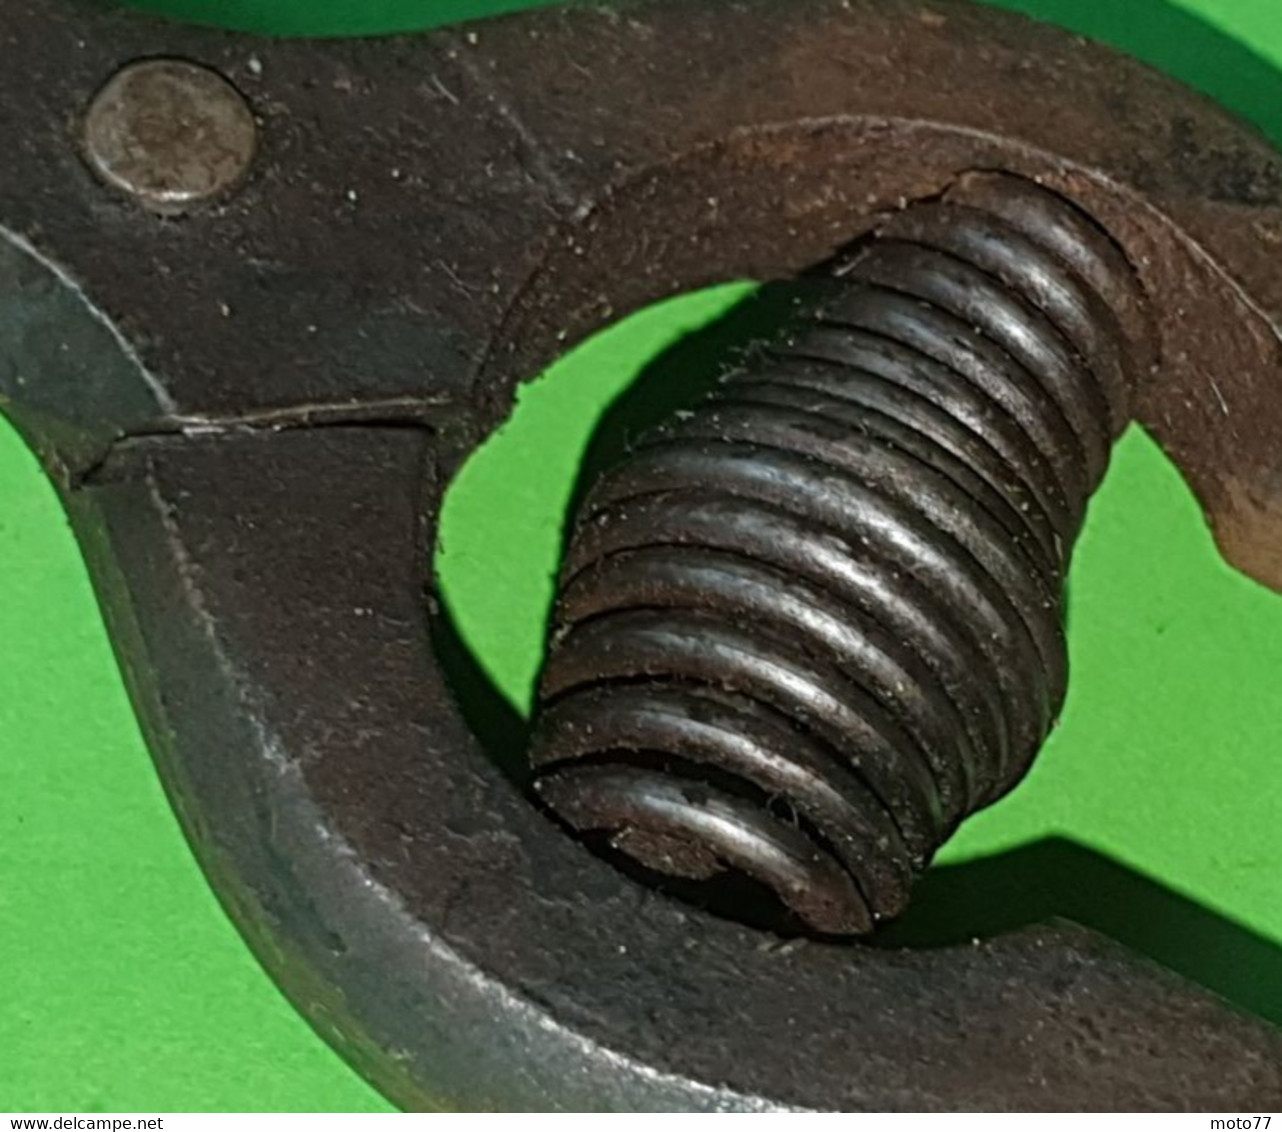 Ancien OUTIL spécial - SÉCATEUR pointu - acier cuir - "Laissé dans son jus"- vers 1920 1950